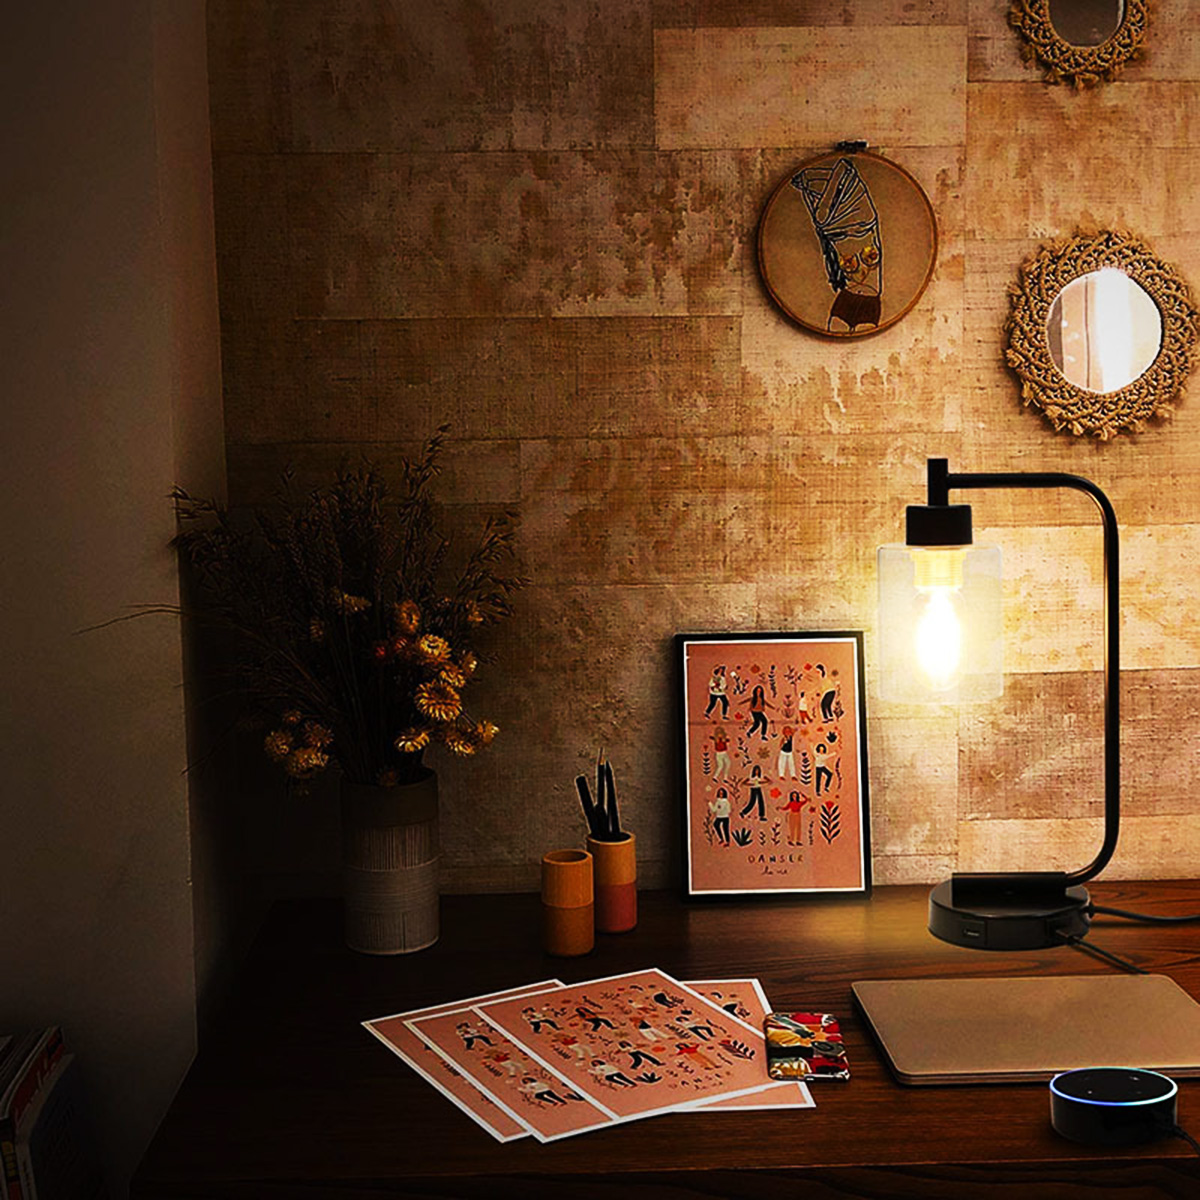 Modern-Table-Lamp-Industrial-Bedside-Desk-Light-Bulb-Lampshade-Bedroom-Home-220V-1776831-6